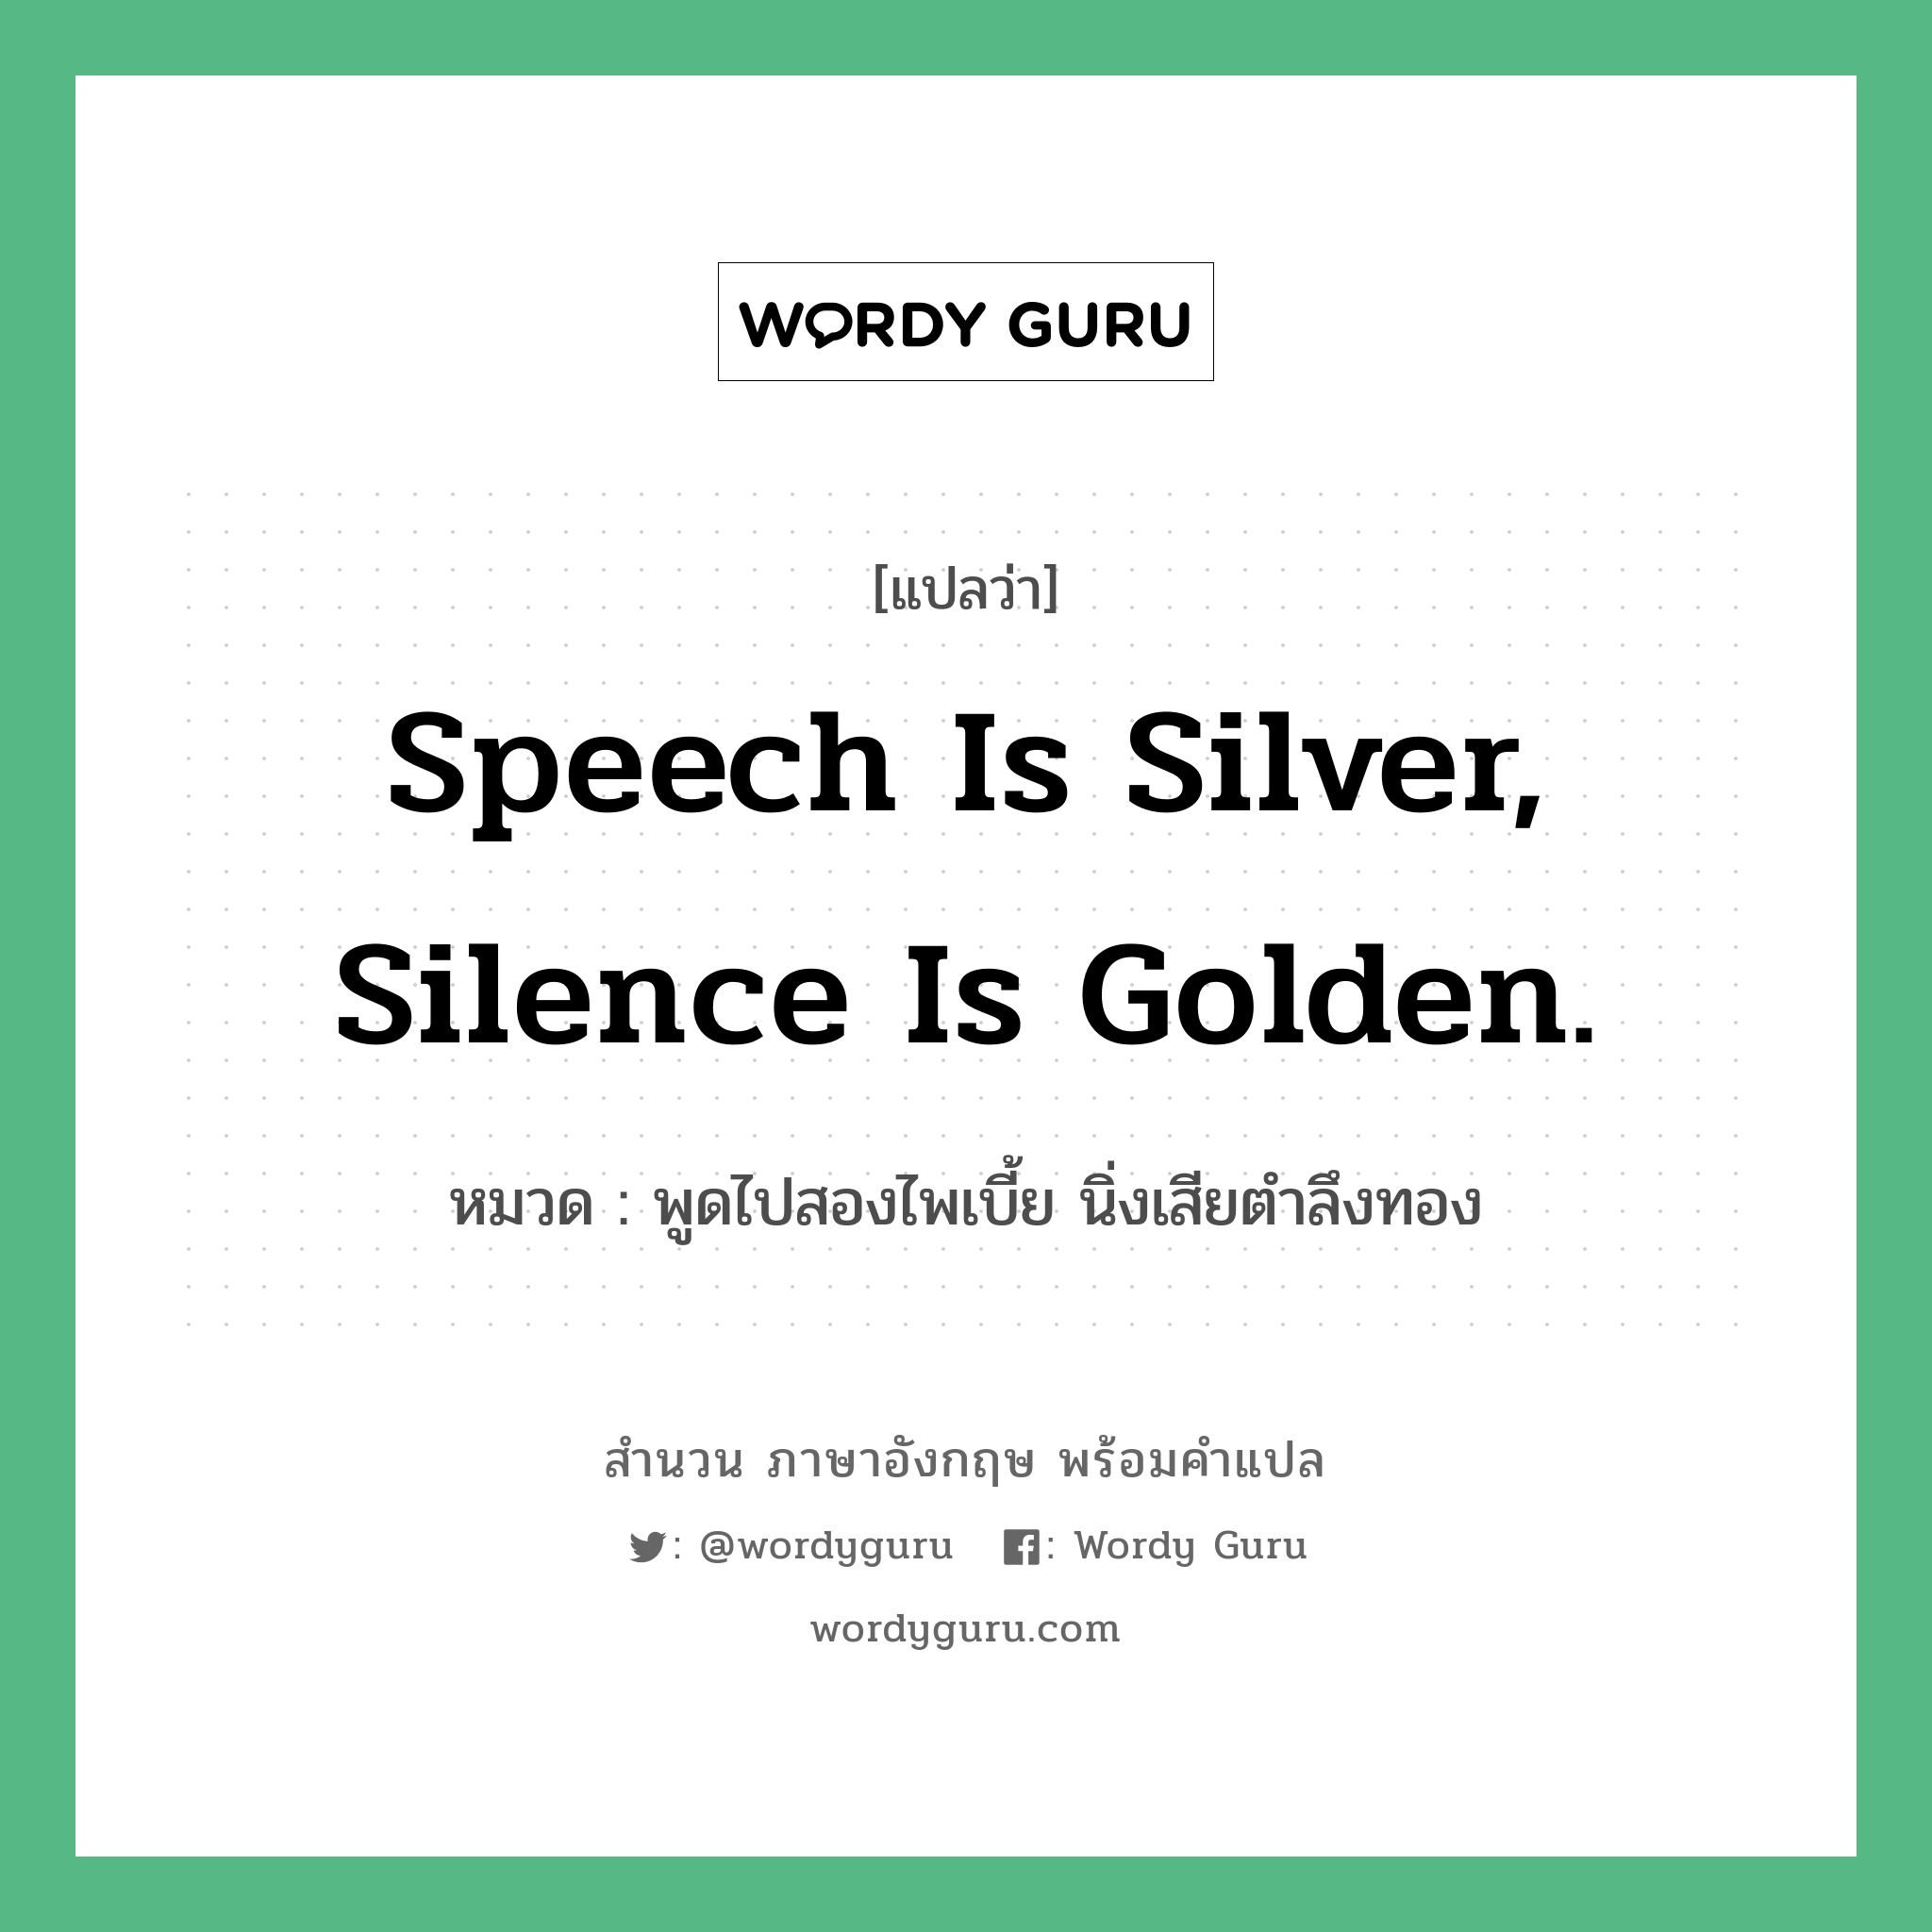 Speech is silver, silence is golden. แปลว่า?, สำนวนภาษาอังกฤษ Speech is silver, silence is golden. หมวด พูดไปสองไพเบี้ย นิ่งเสียตำลึงทอง คำสุภาษิต ภาษาอังกฤษ หมวด คำสุภาษิต ภาษาอังกฤษ